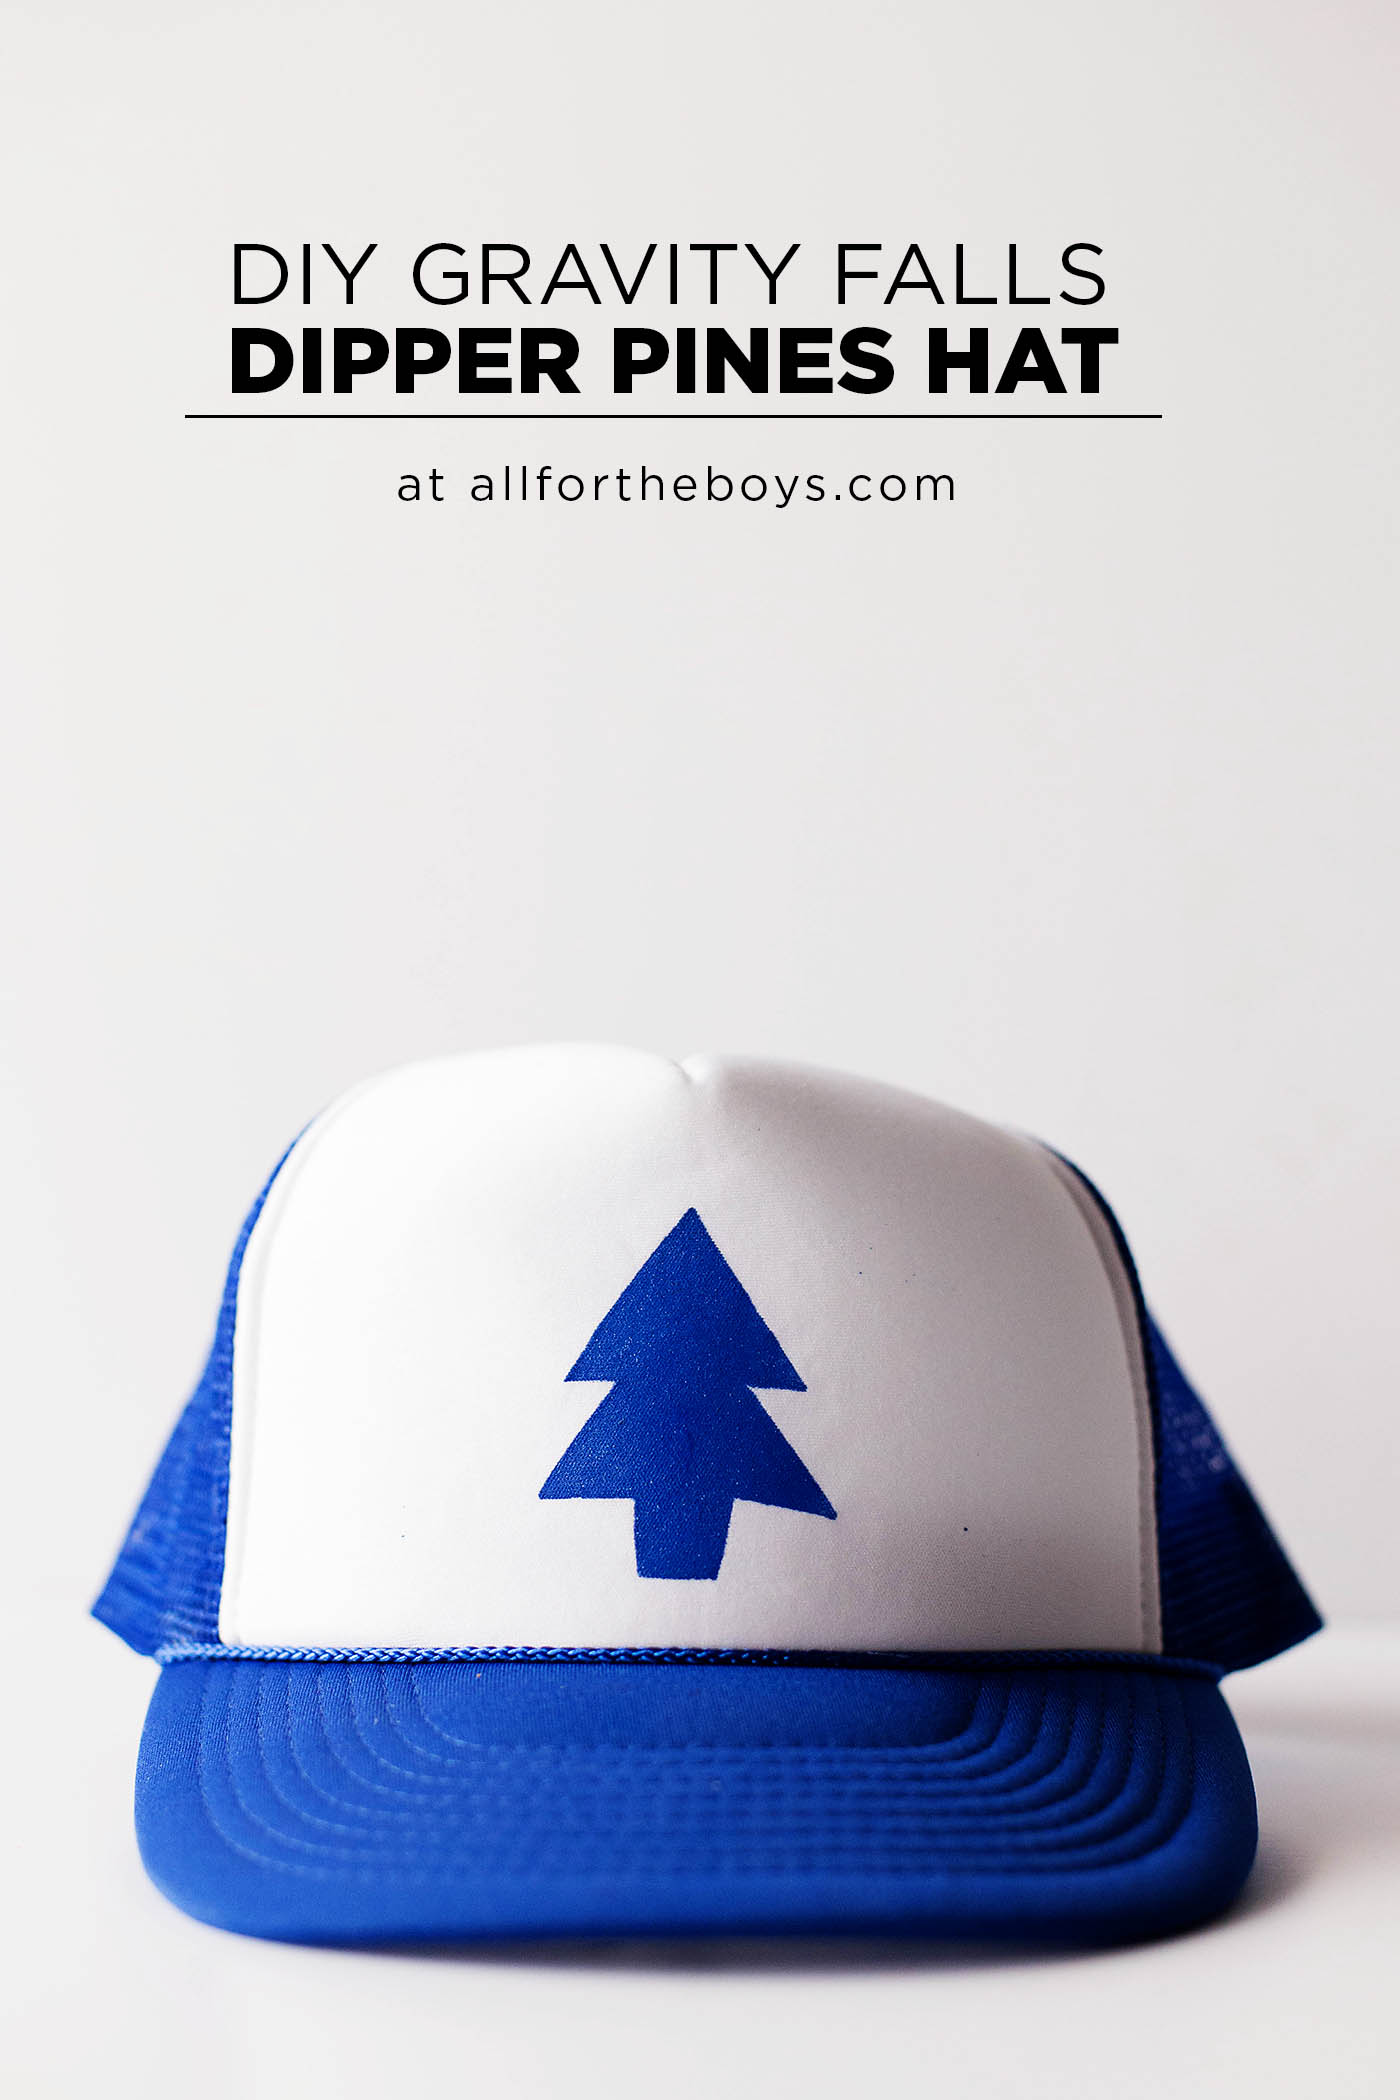 DIY Gravity Falls Dipper Pines hat! 